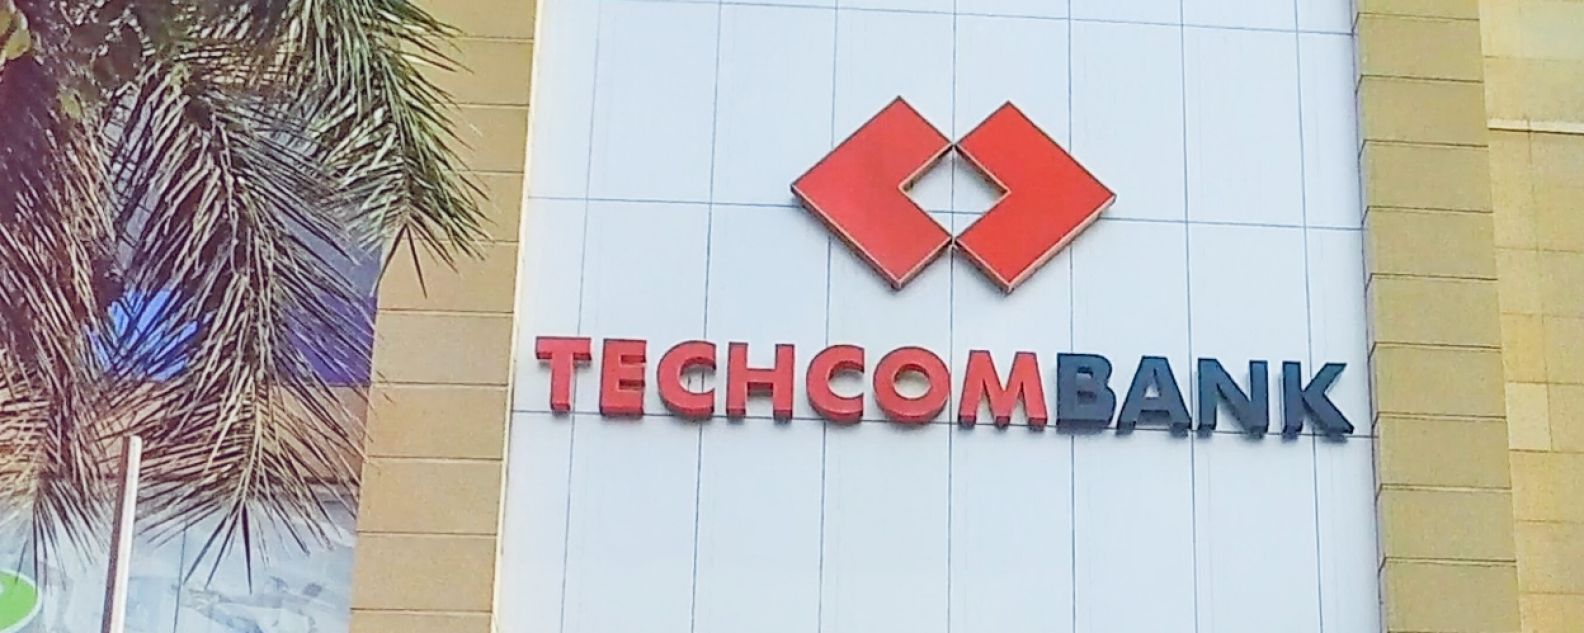 Techcombankのビルの外観